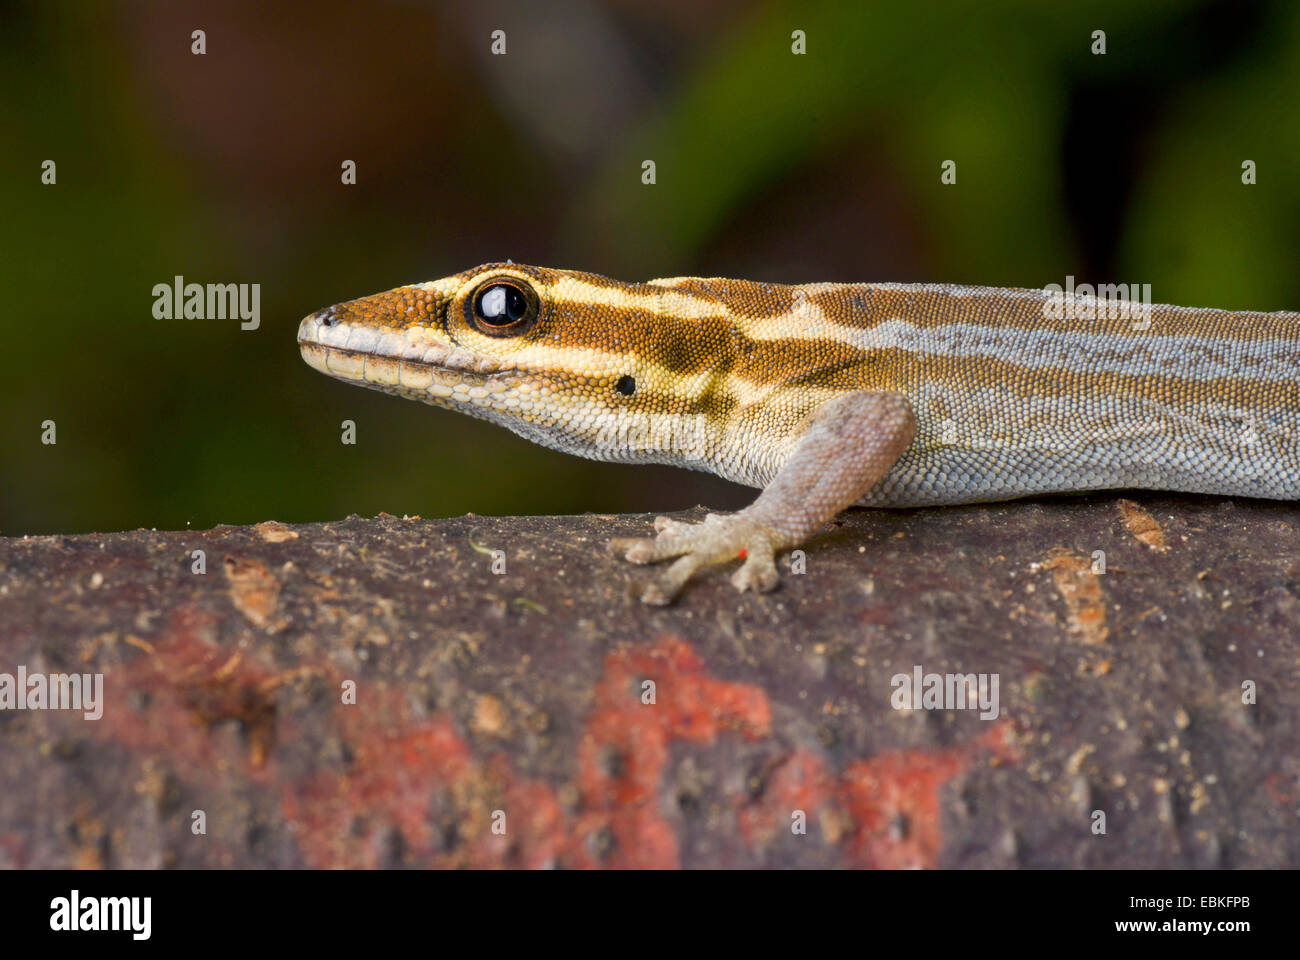 Geco enano (Lygodactylus kimhowelli), Retrato Foto de stock